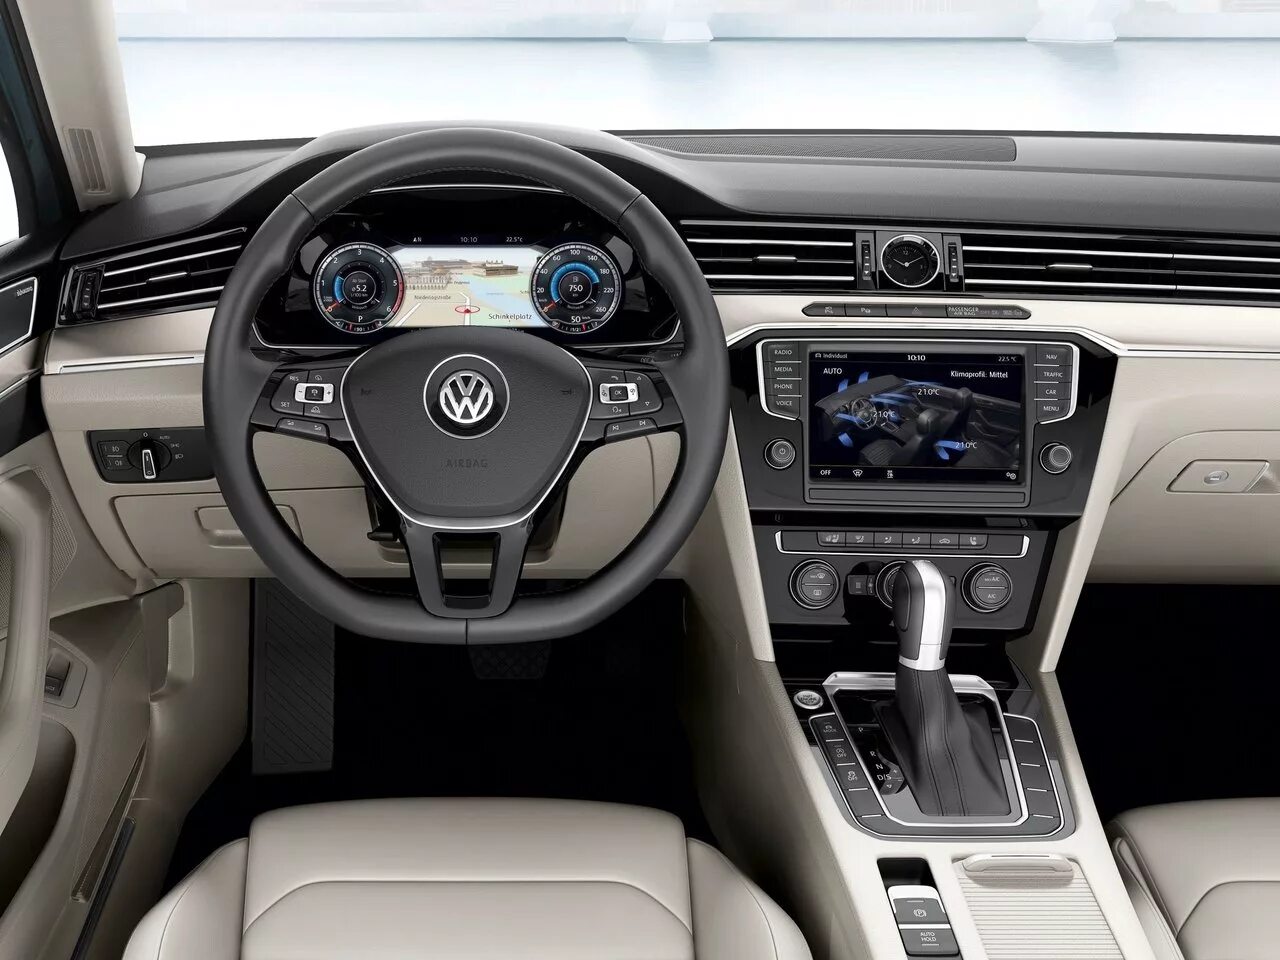 8.2 2014. Volkswagen Passat b8 Interior. Volkswagen Passat b8 салон. Фольксваген Пассат в8 салон. VW Passat b8 2014 Interior.